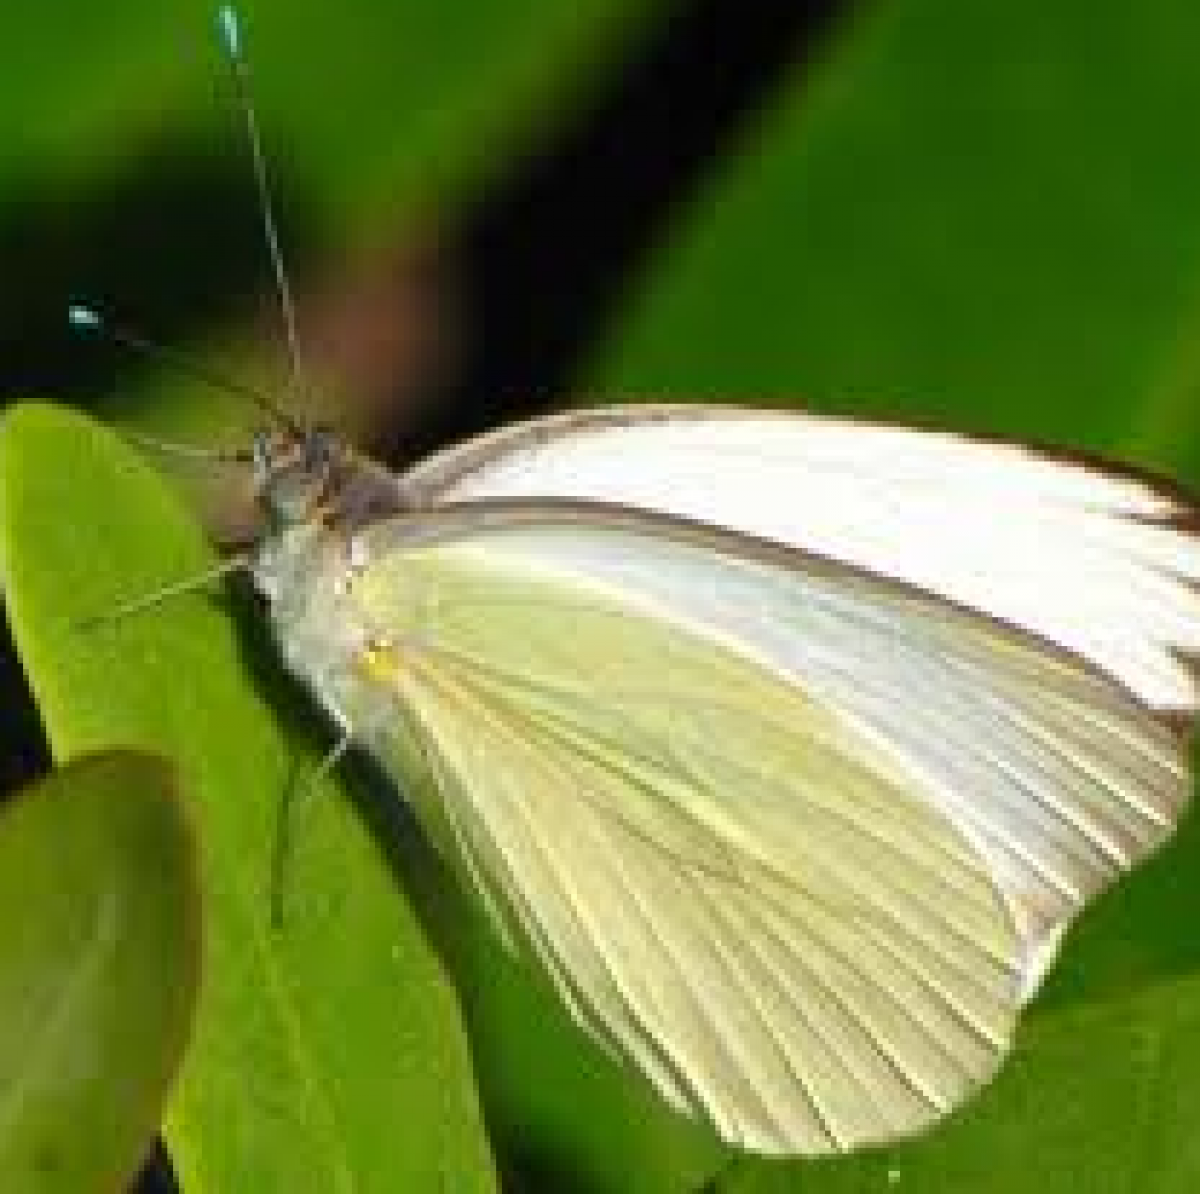 Μία μικρή άσπρη πεταλούδα